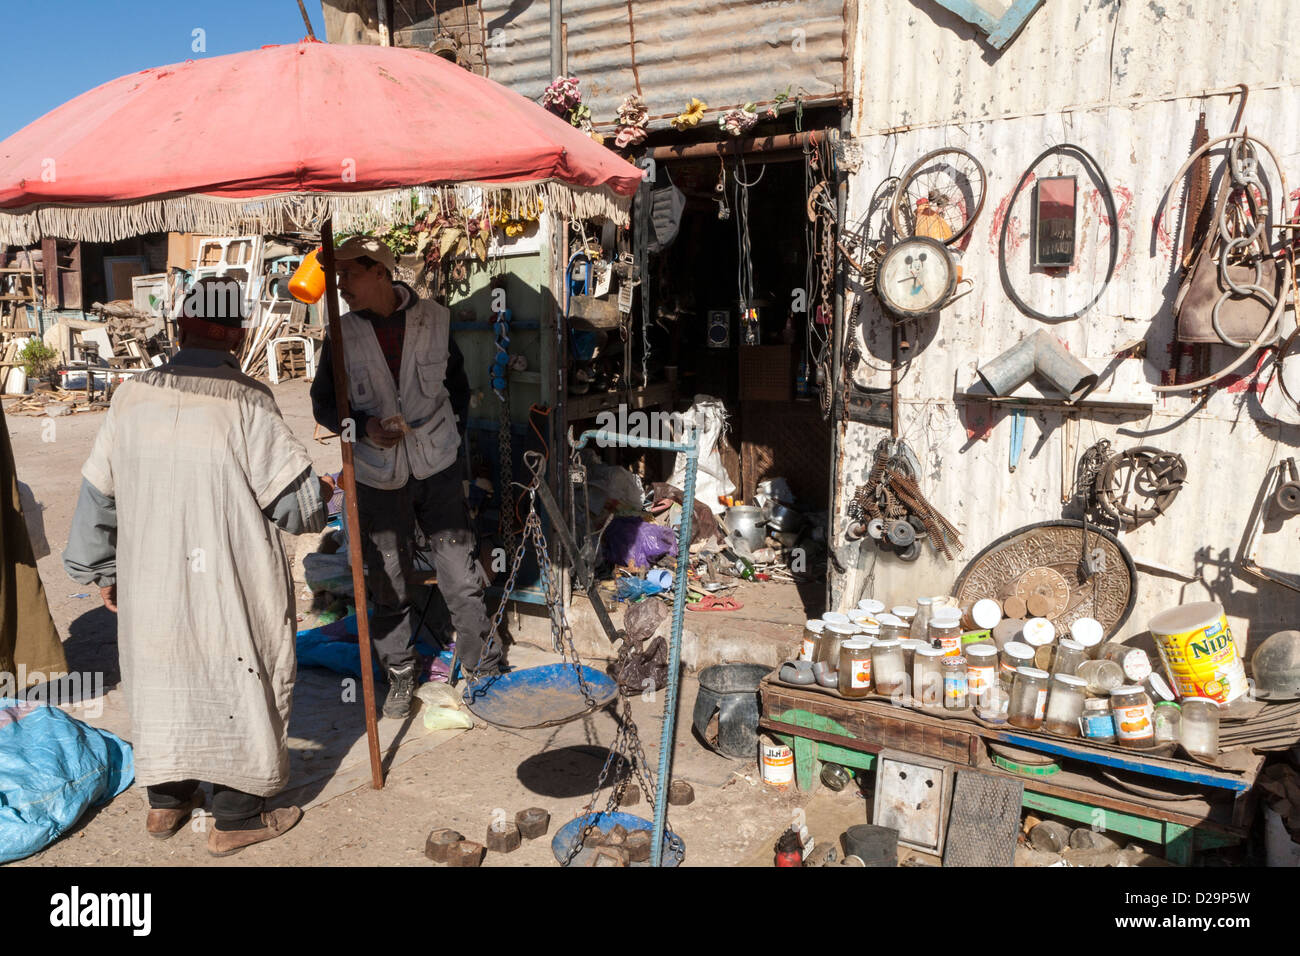 Scrayard, marché du dimanche, Berber Village, Taroudant, Maroc Banque D'Images